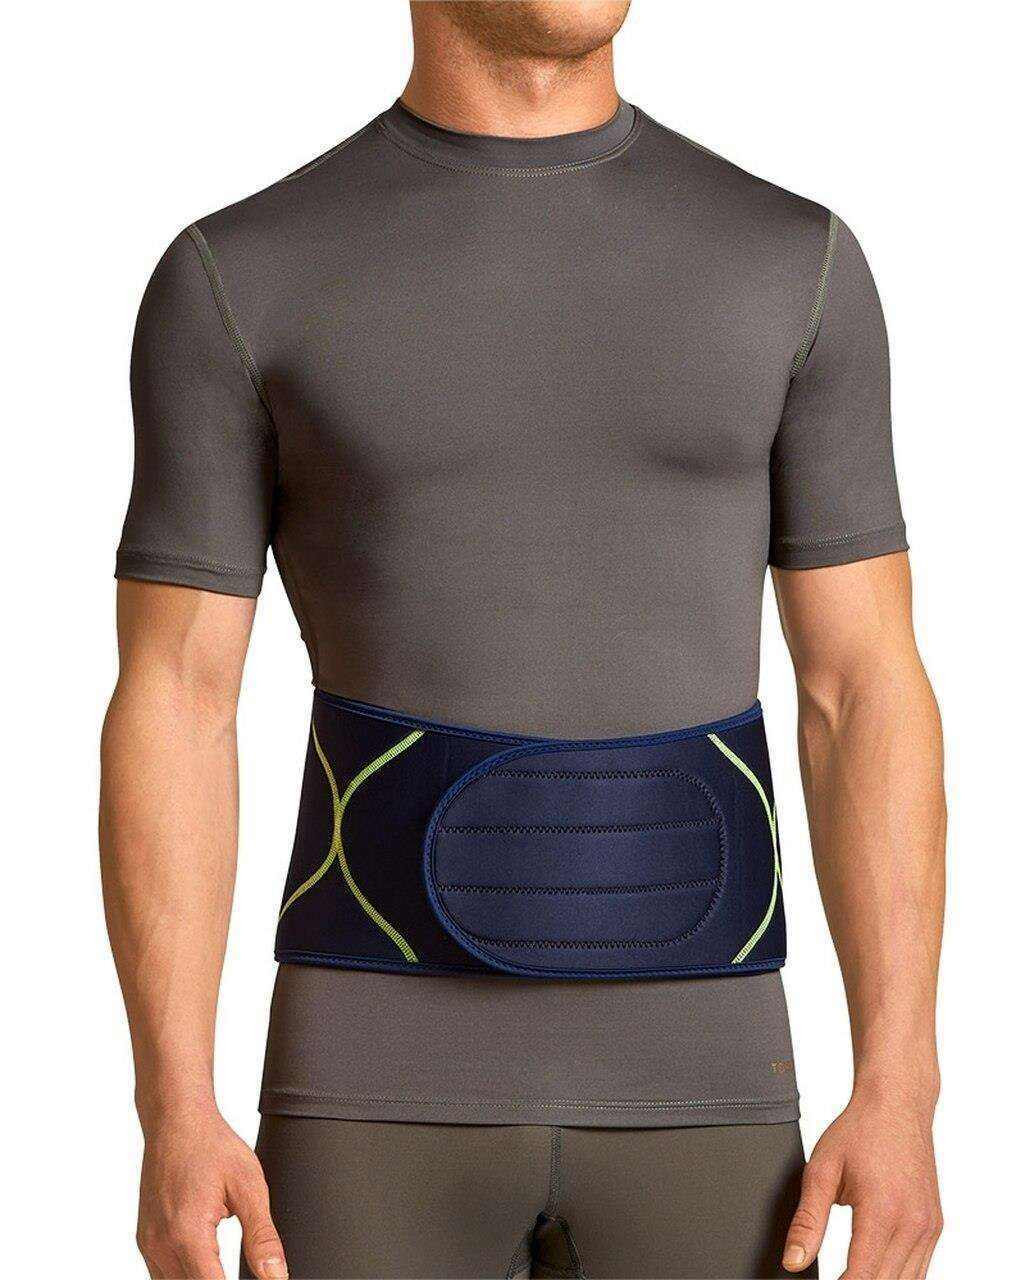 Back Support Belt for Men and Women Adjustable Back Brace for Men